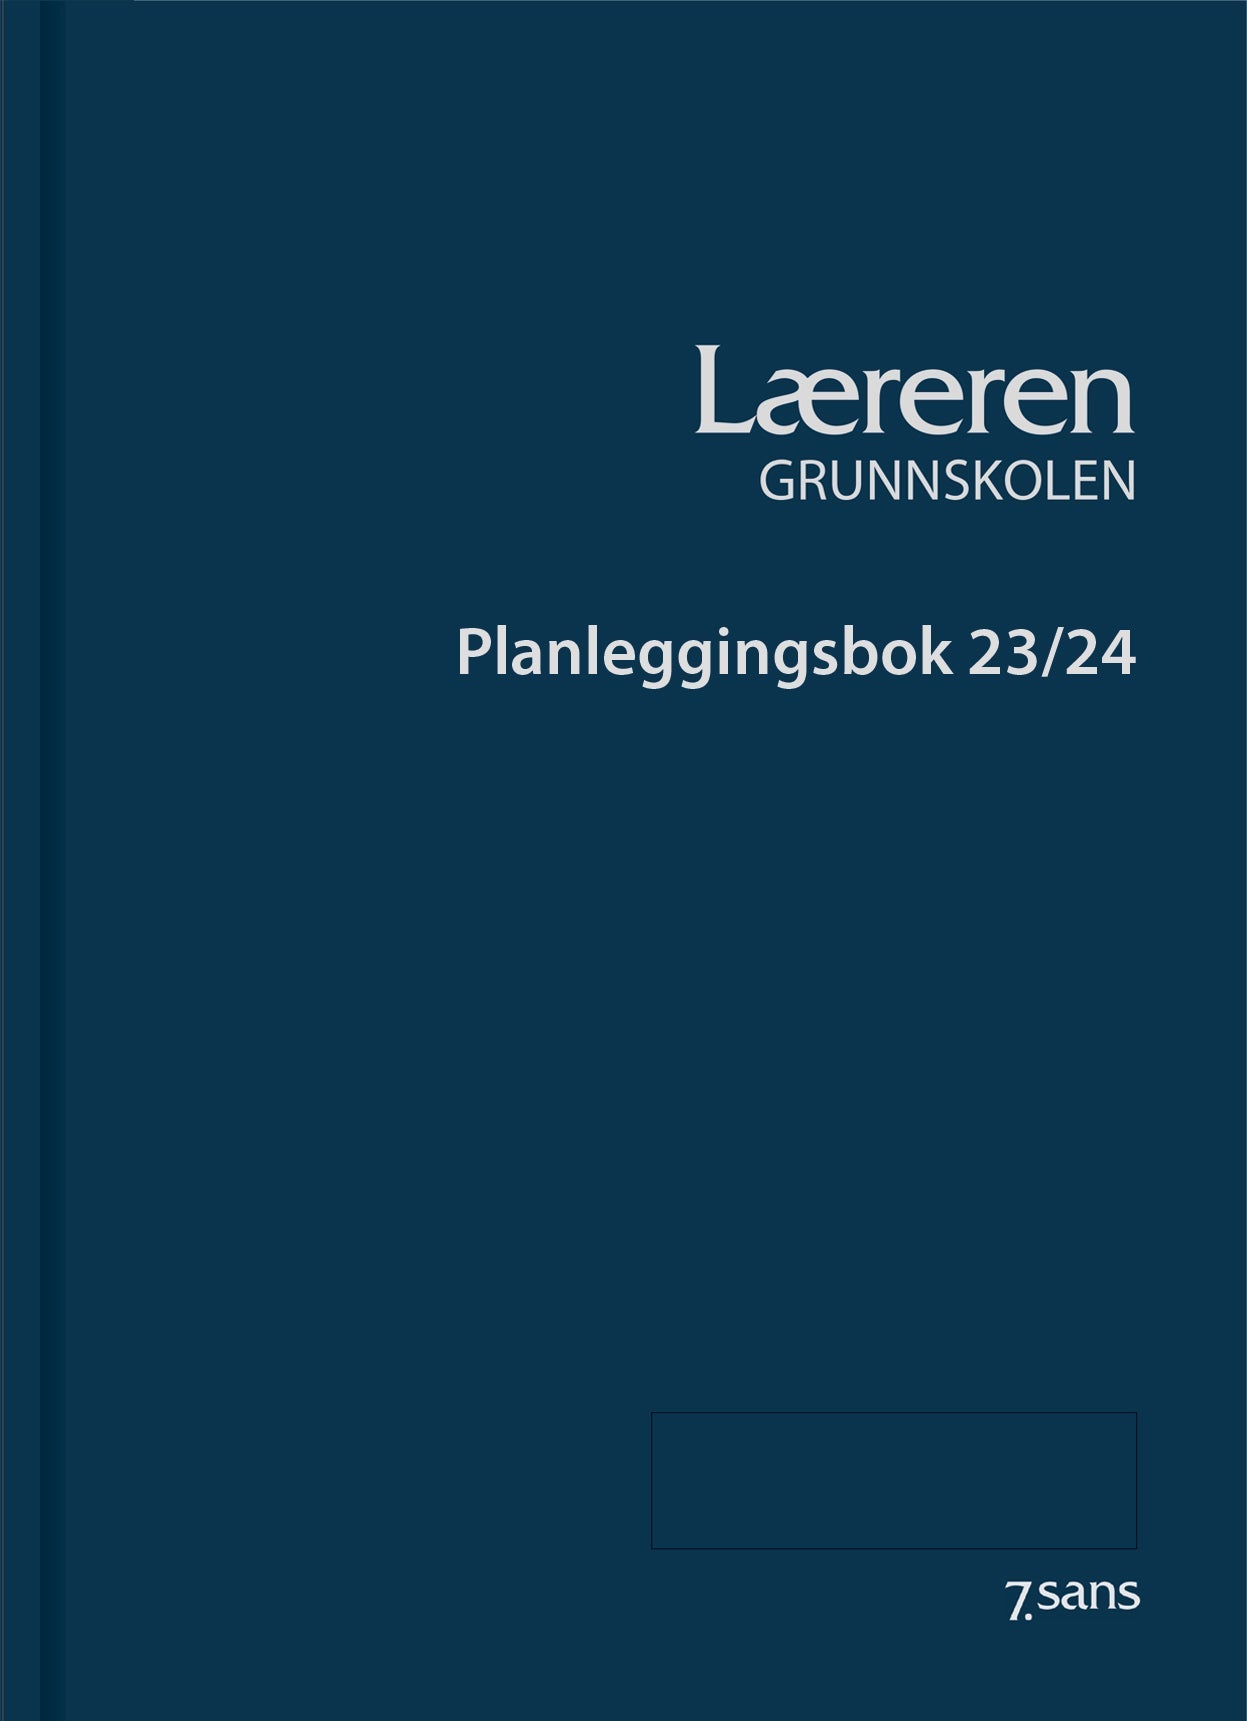 7.sans Læreren Grunnskolen innbundet 2023/24, forside